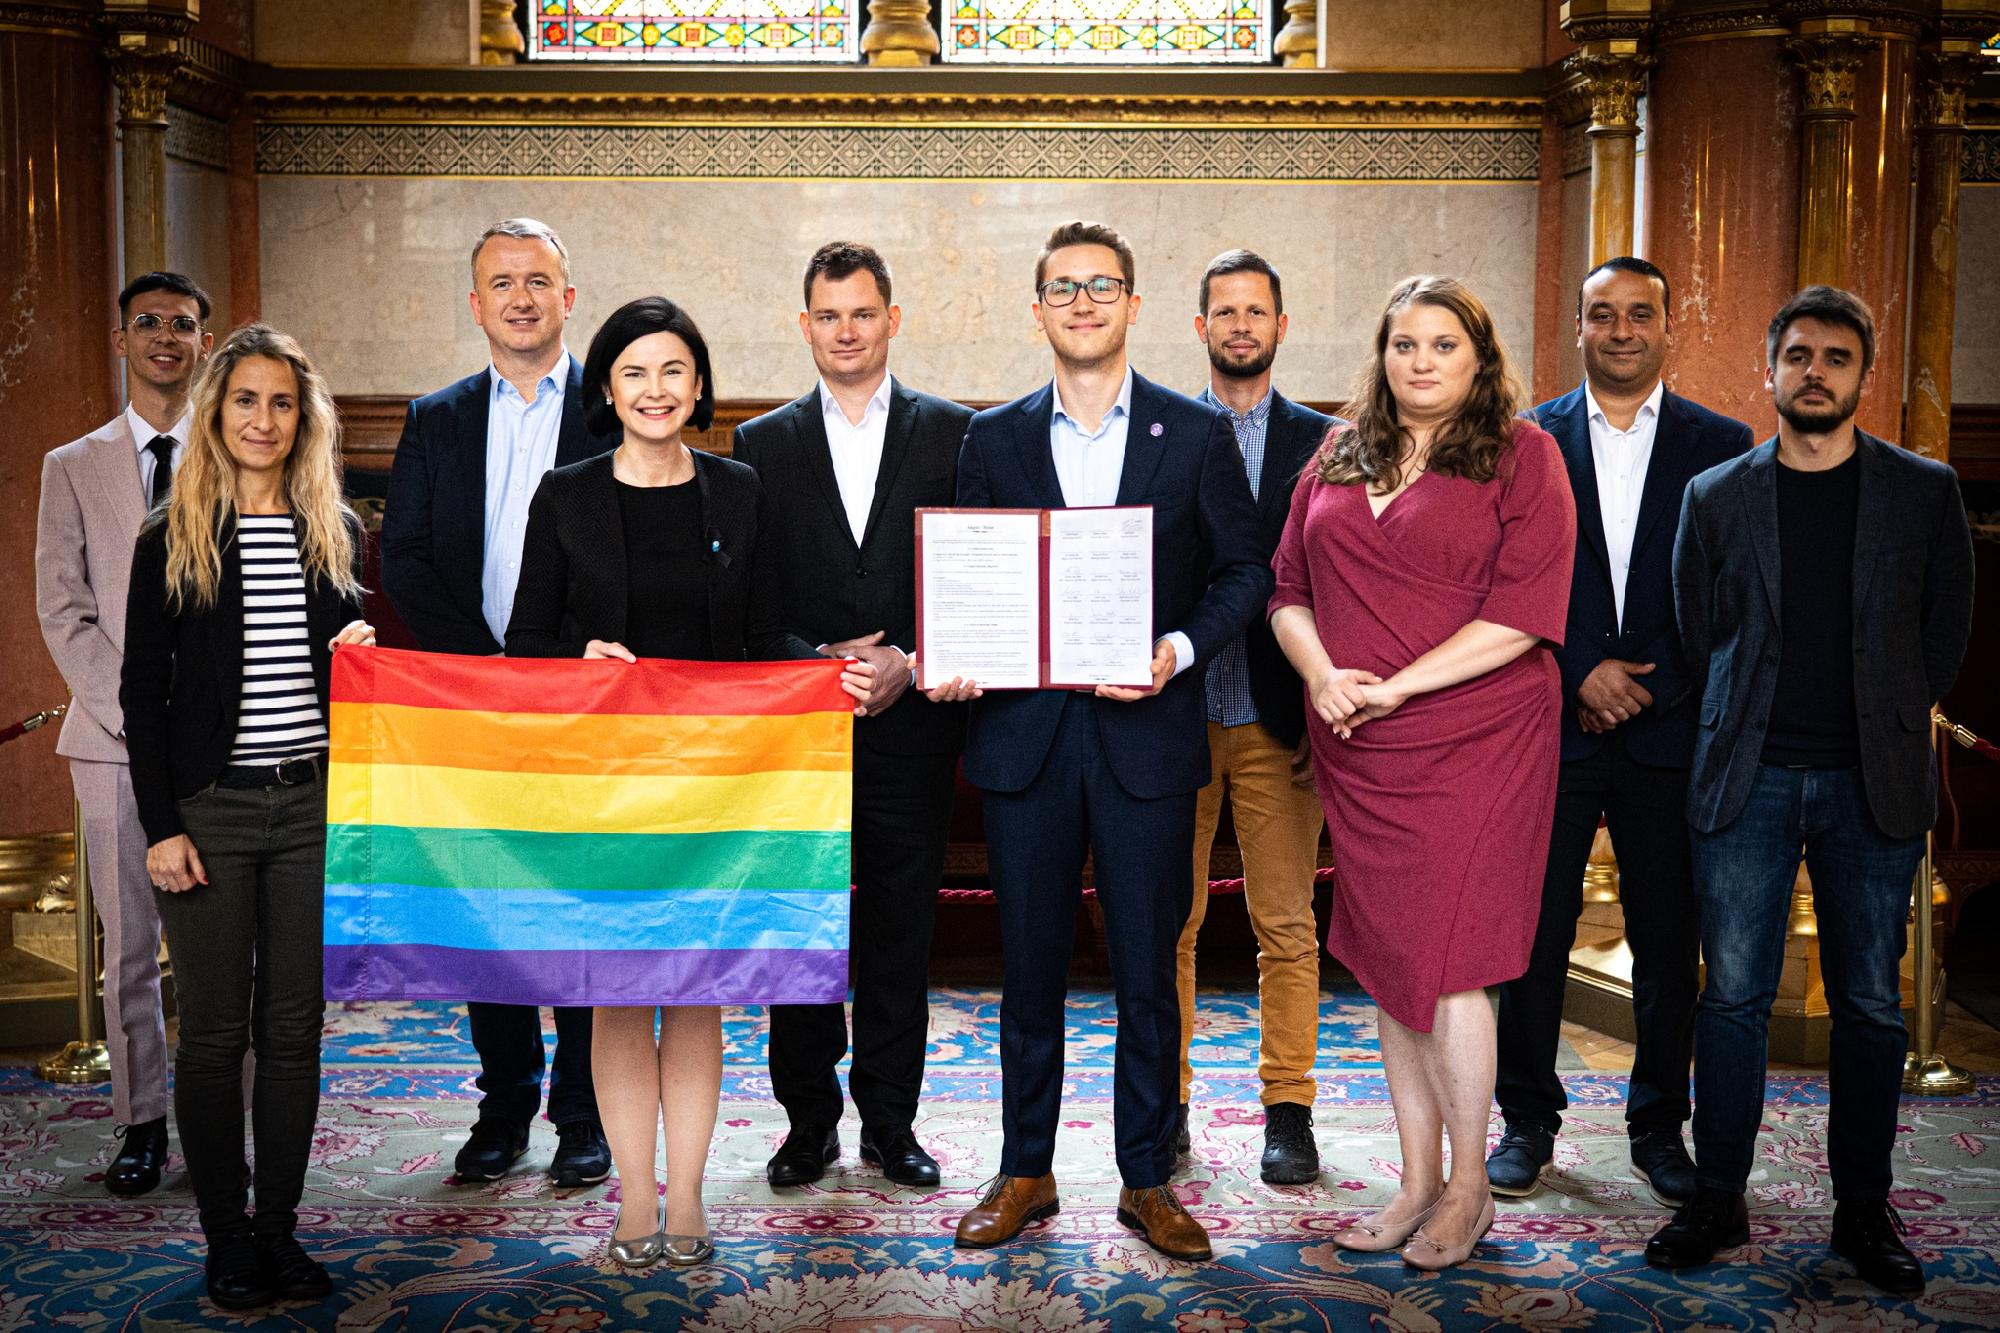 Külföldi kapcsolatokat épít az LMBTQ-mozgalmat támogató parlamenti képviselőcsoport